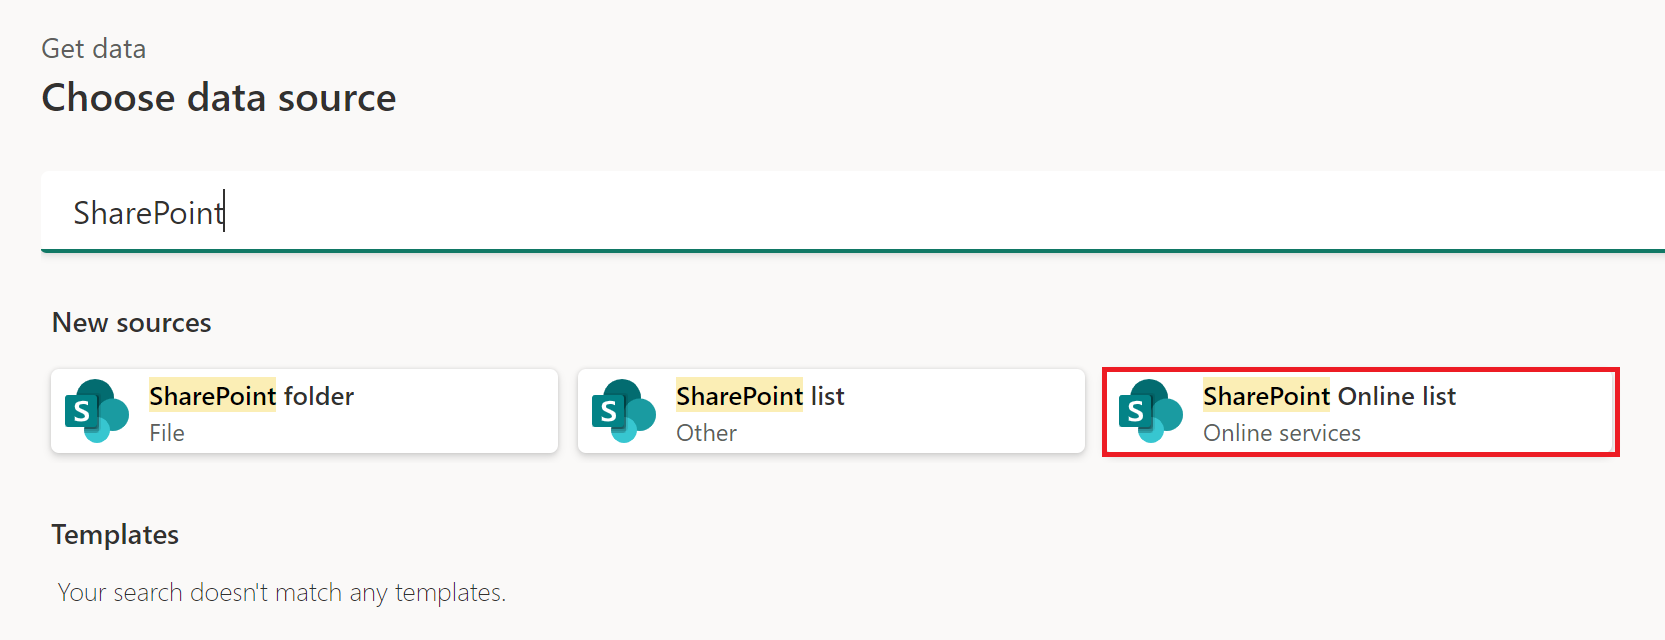 Снимок экрана: окно получения данных с выделенным списком SharePoint Online.